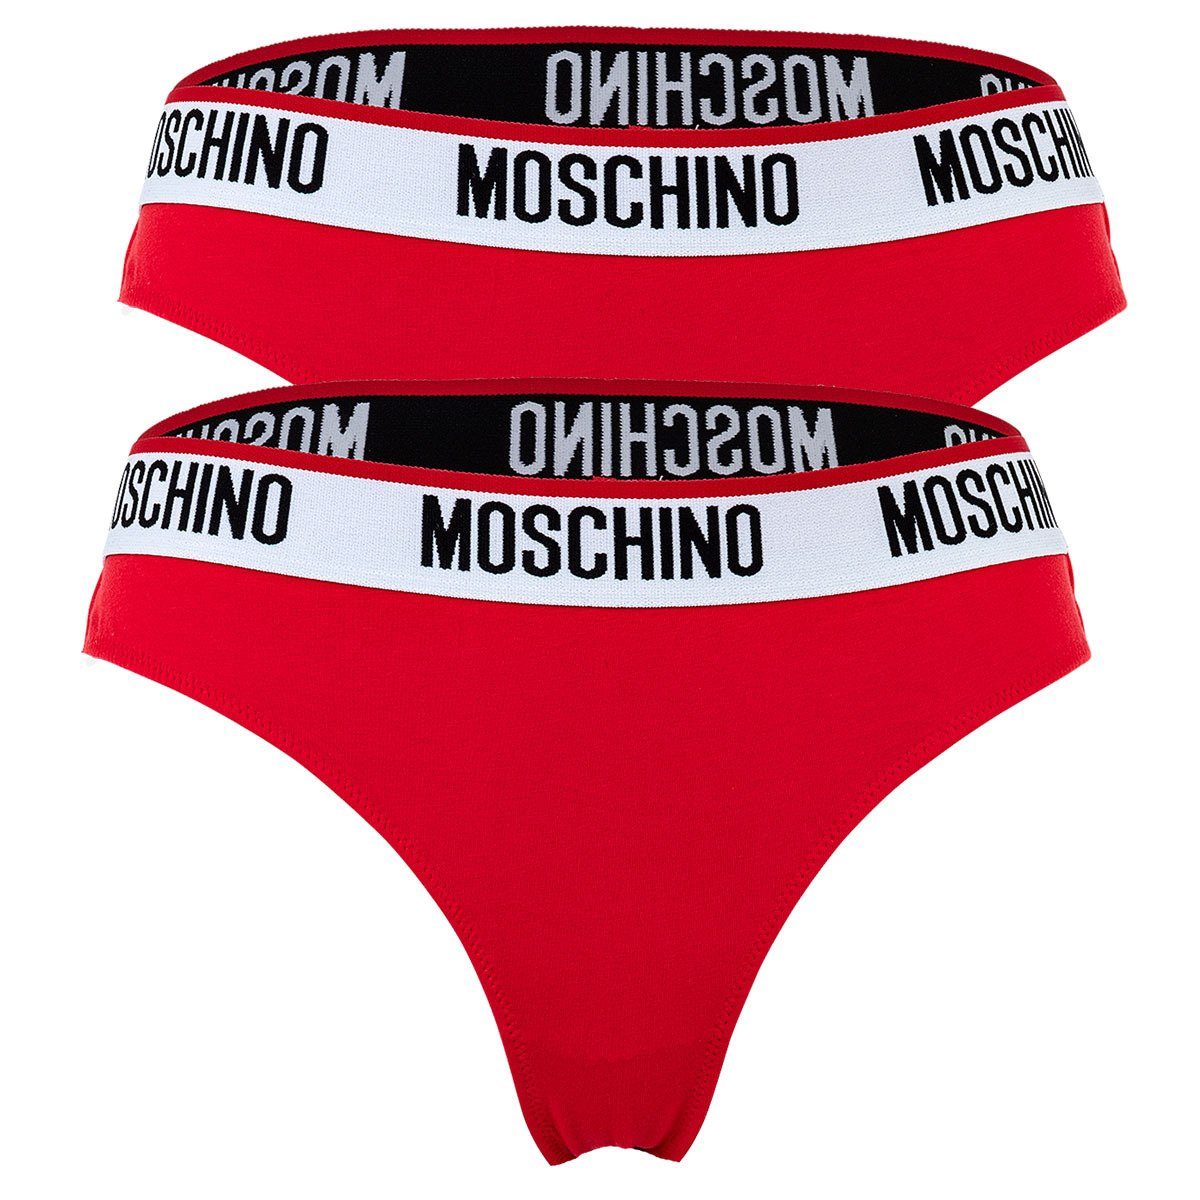 Moschino Slip Damen Hipsters 2er Pack - Briefs, Unterhose Rot